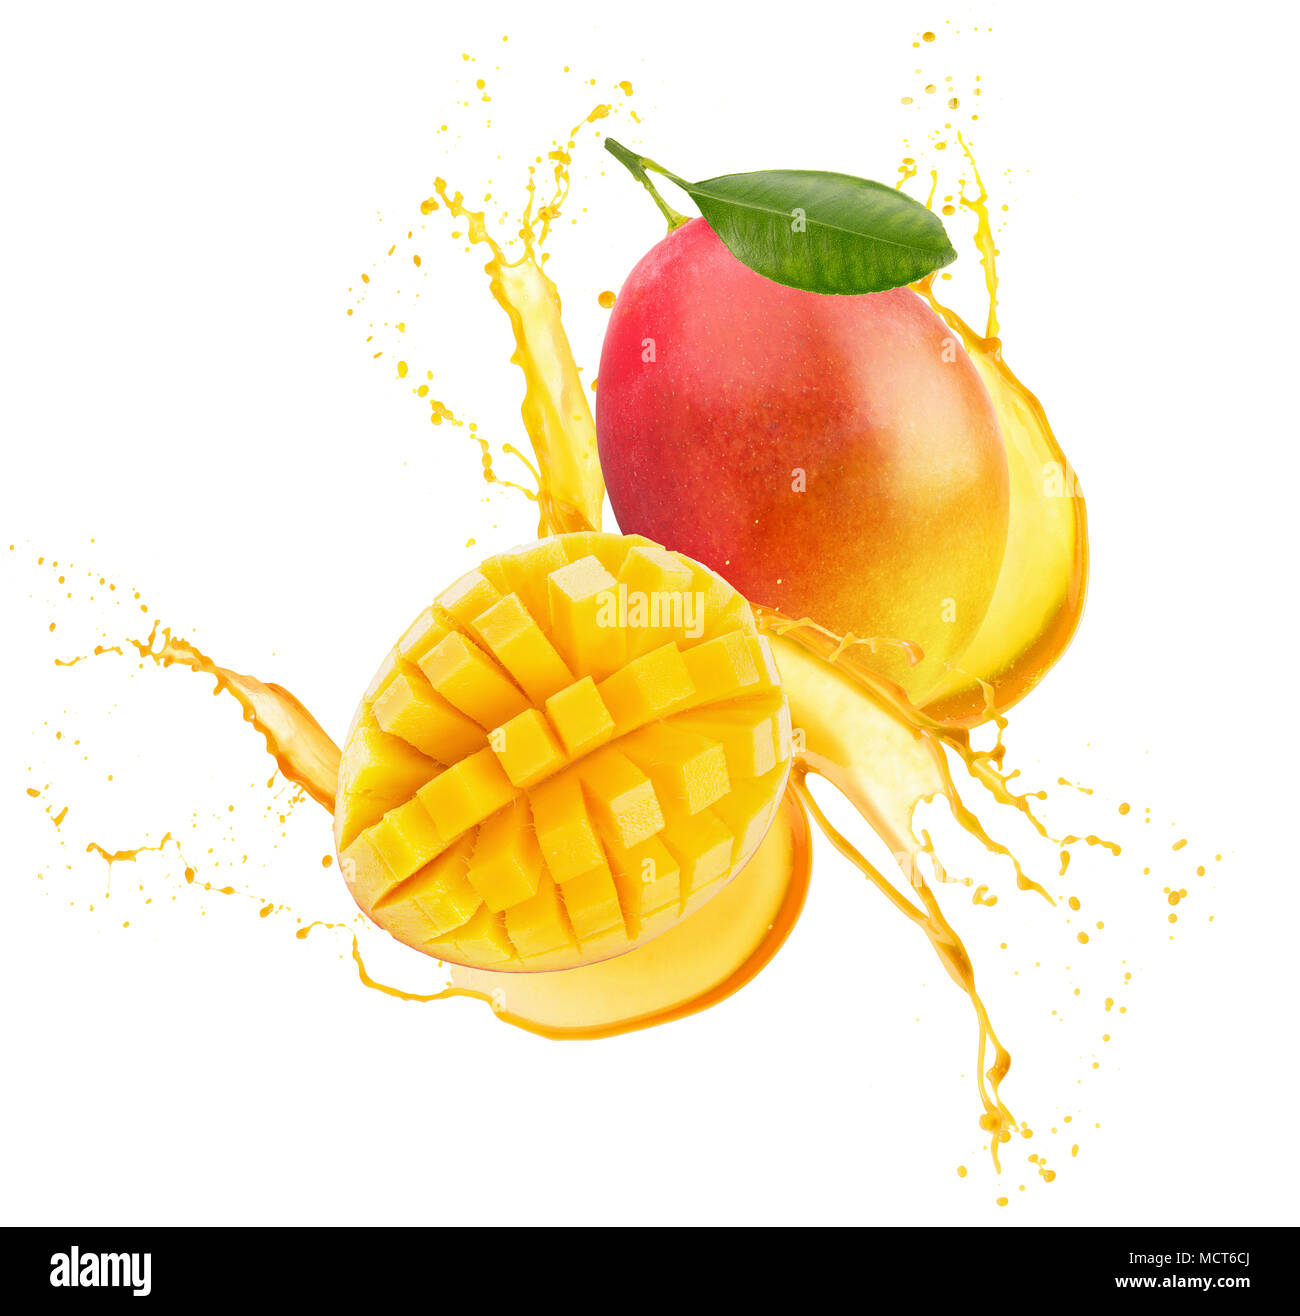 mango in juice splash isolated on a white background Stock Photo - Alamy